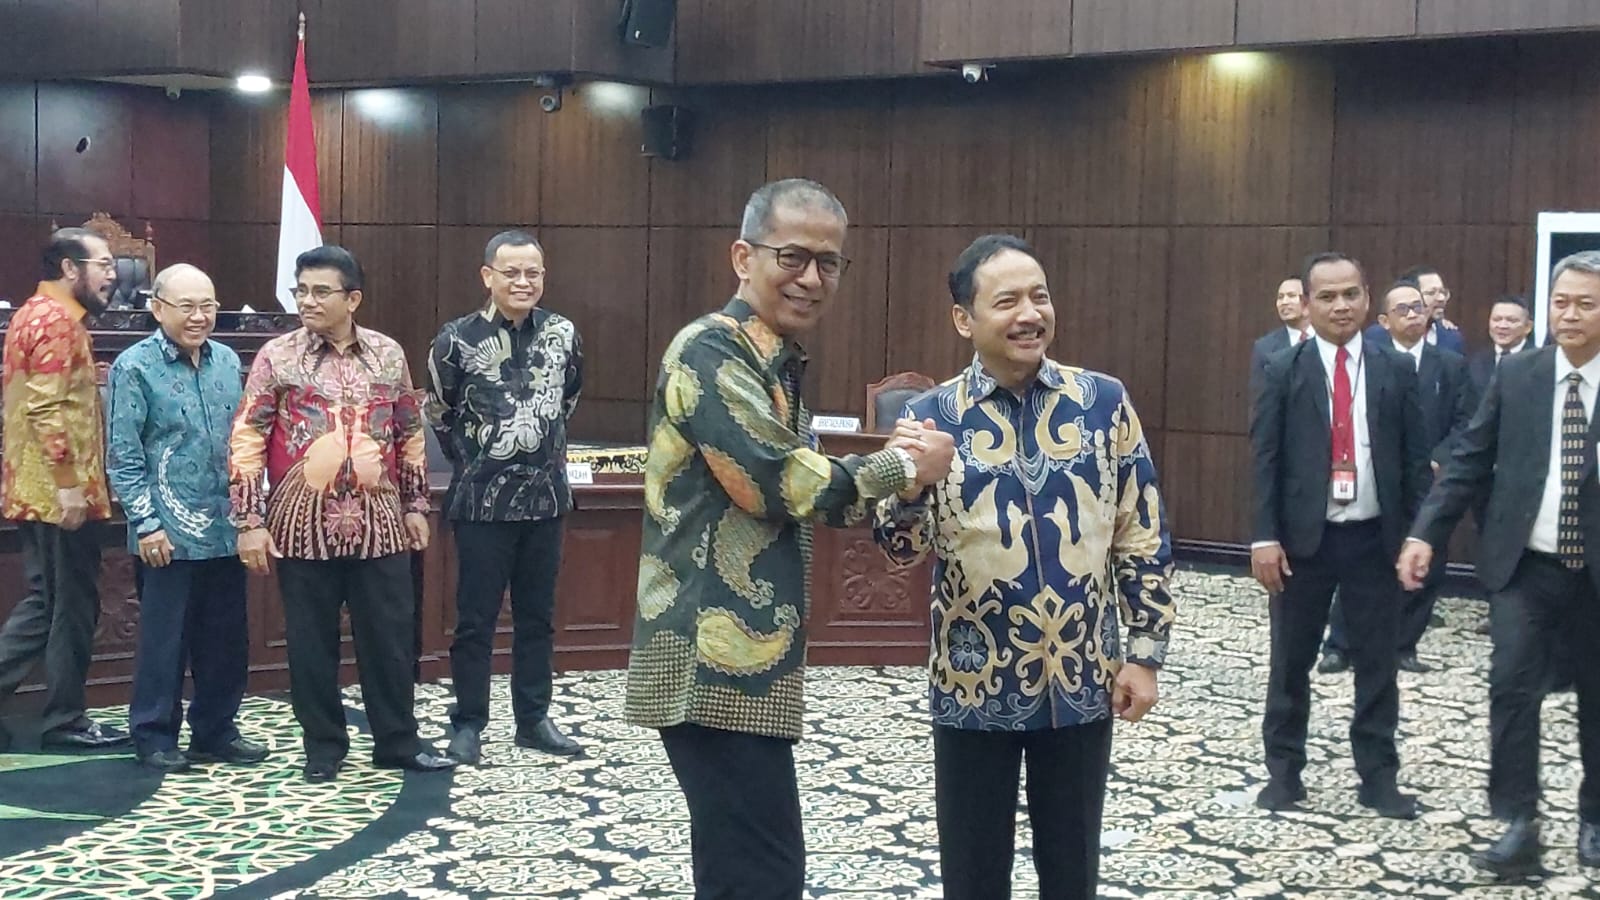  Jadi Ketua MK, Suhartoyo Janji Akan Selalu Dengar Kritikan Publik